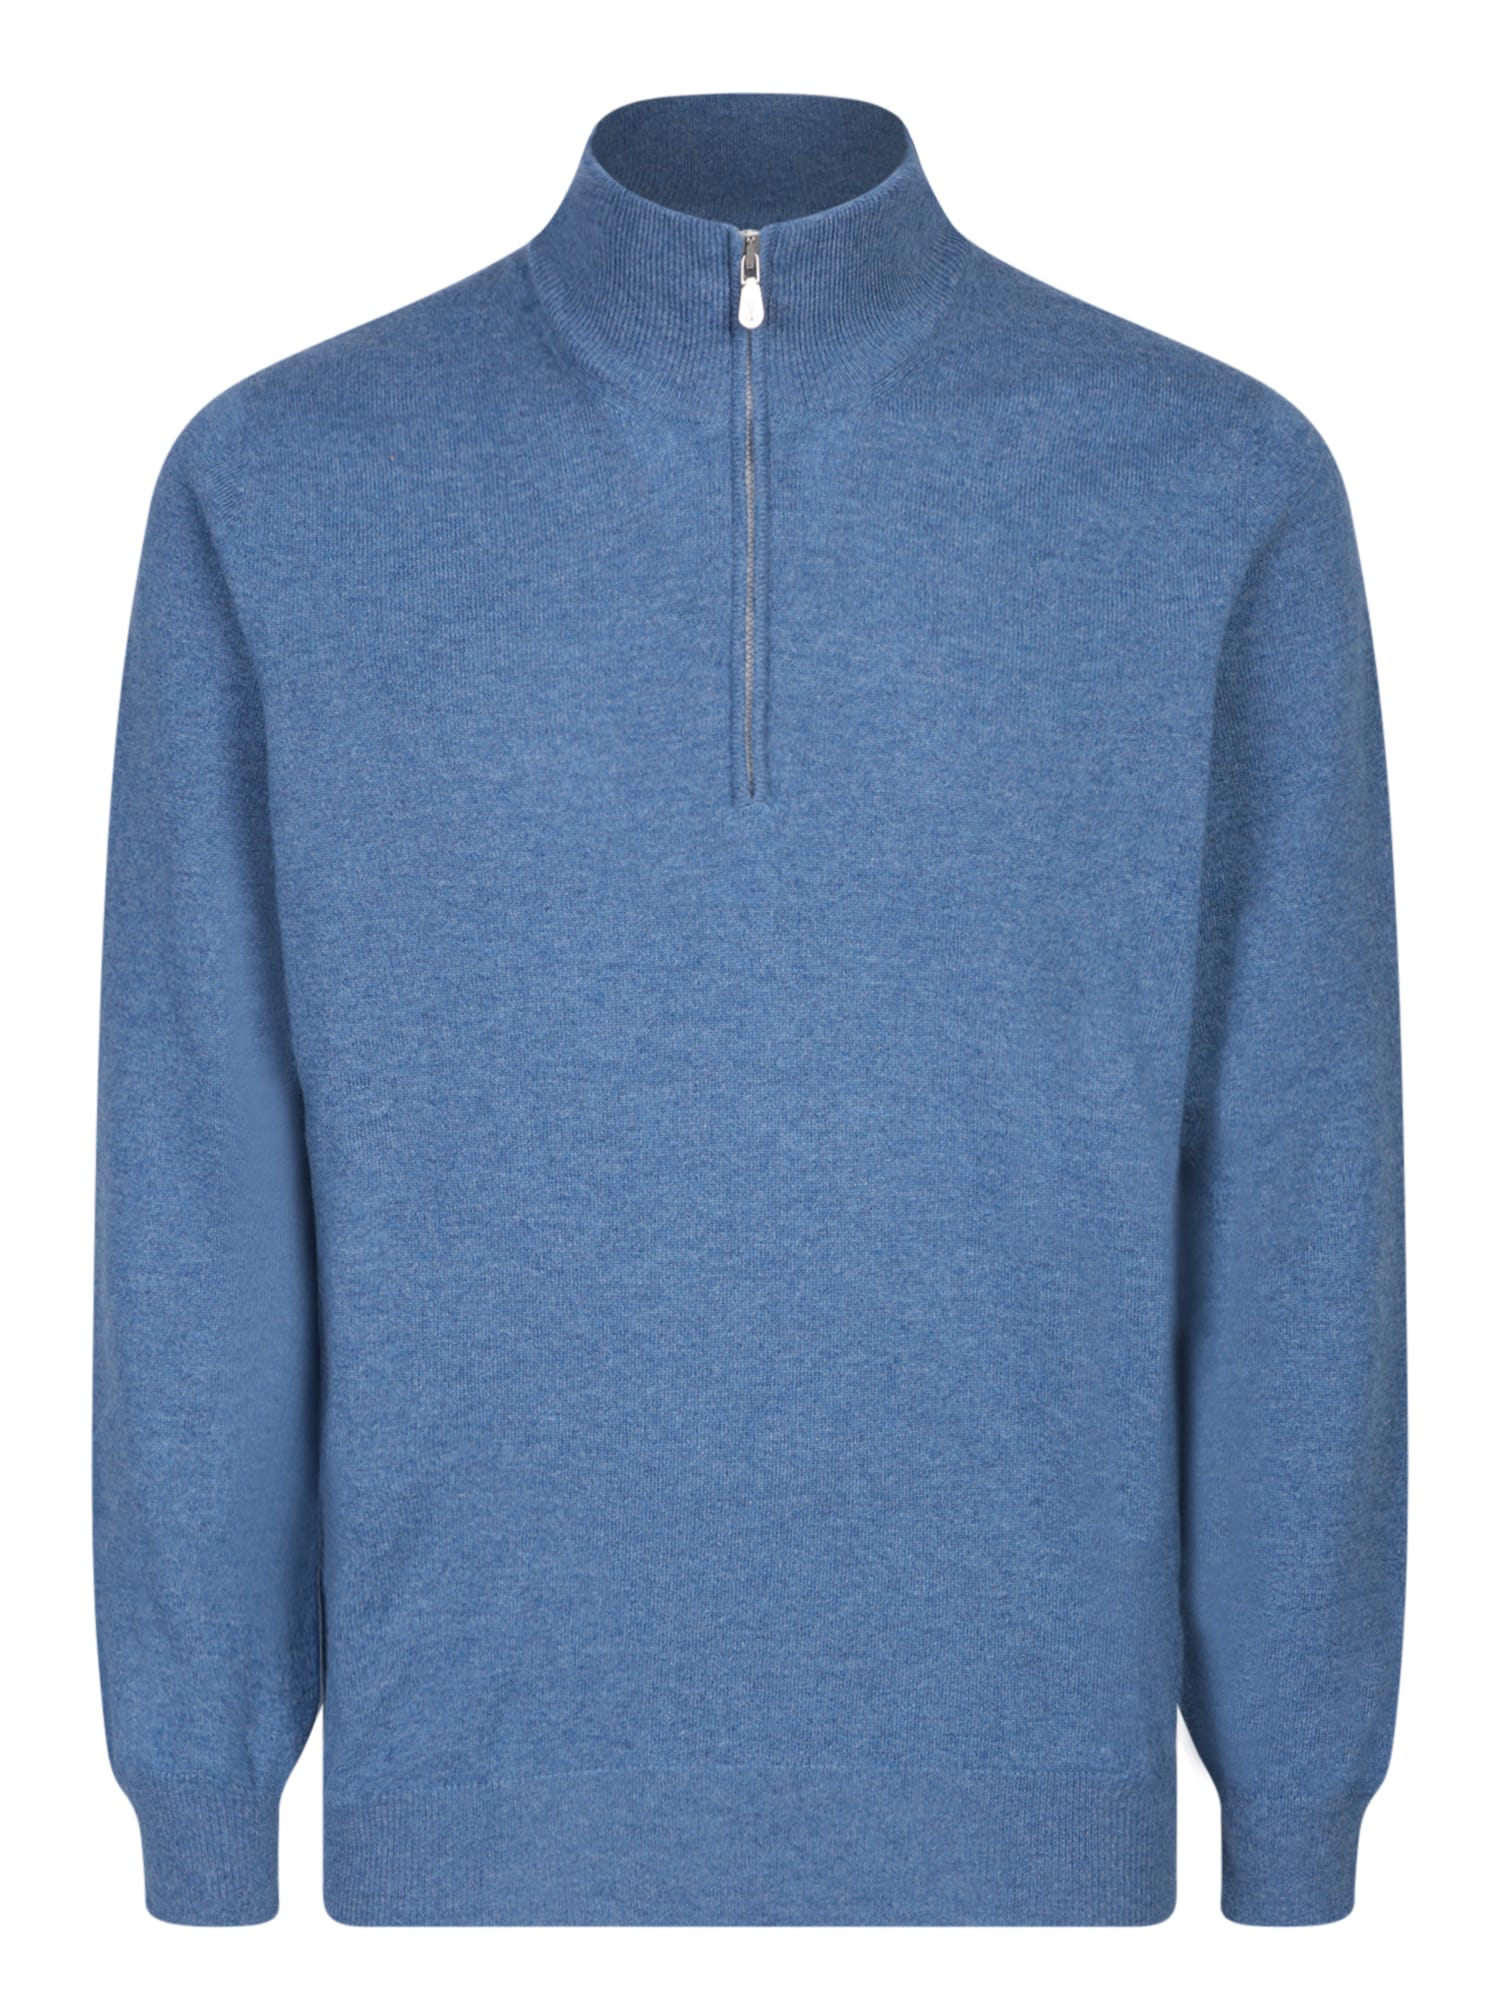 Shop Brunello Cucinelli Light Blue Cashmere Sweater